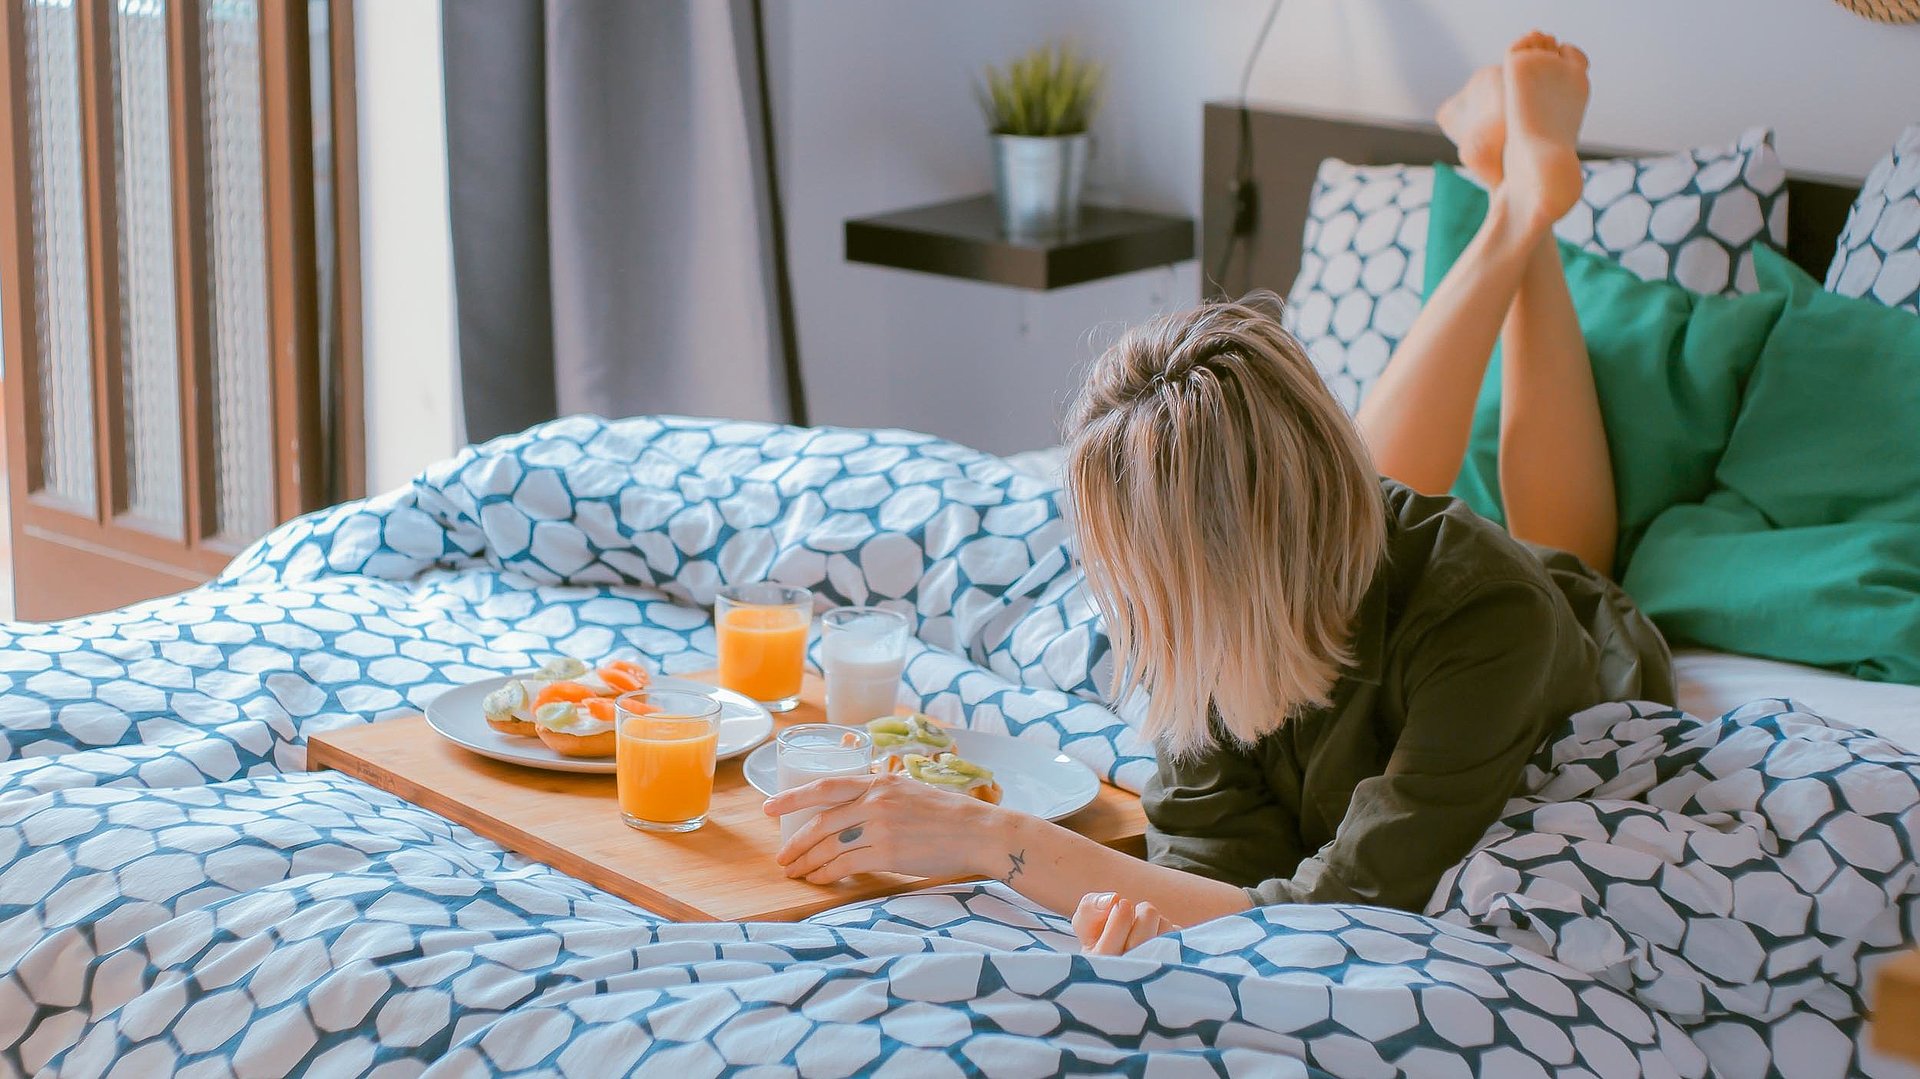 Pauschalen für eine Woche in Oberbayern - junge blonde Frau liegt im Bett neben einer Frühstücksplatte, gefüllt mit O-Saft, Milch und belegten Brötchen